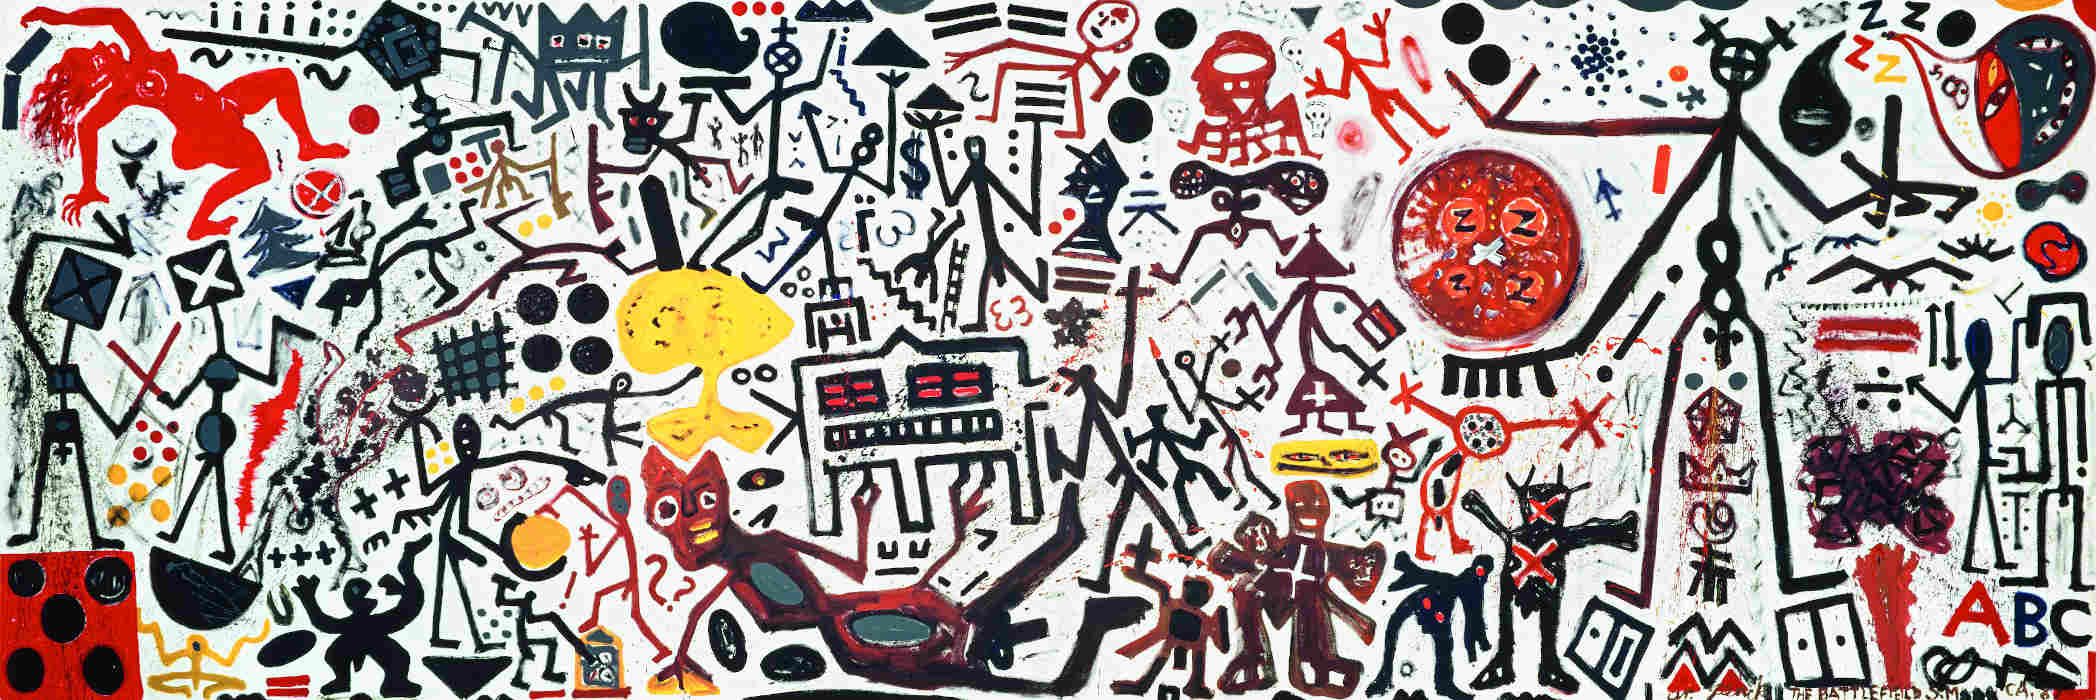 Tutto l’universo figurativo di A.R. Penck in una monumentale retrospettiva a Mendrisio